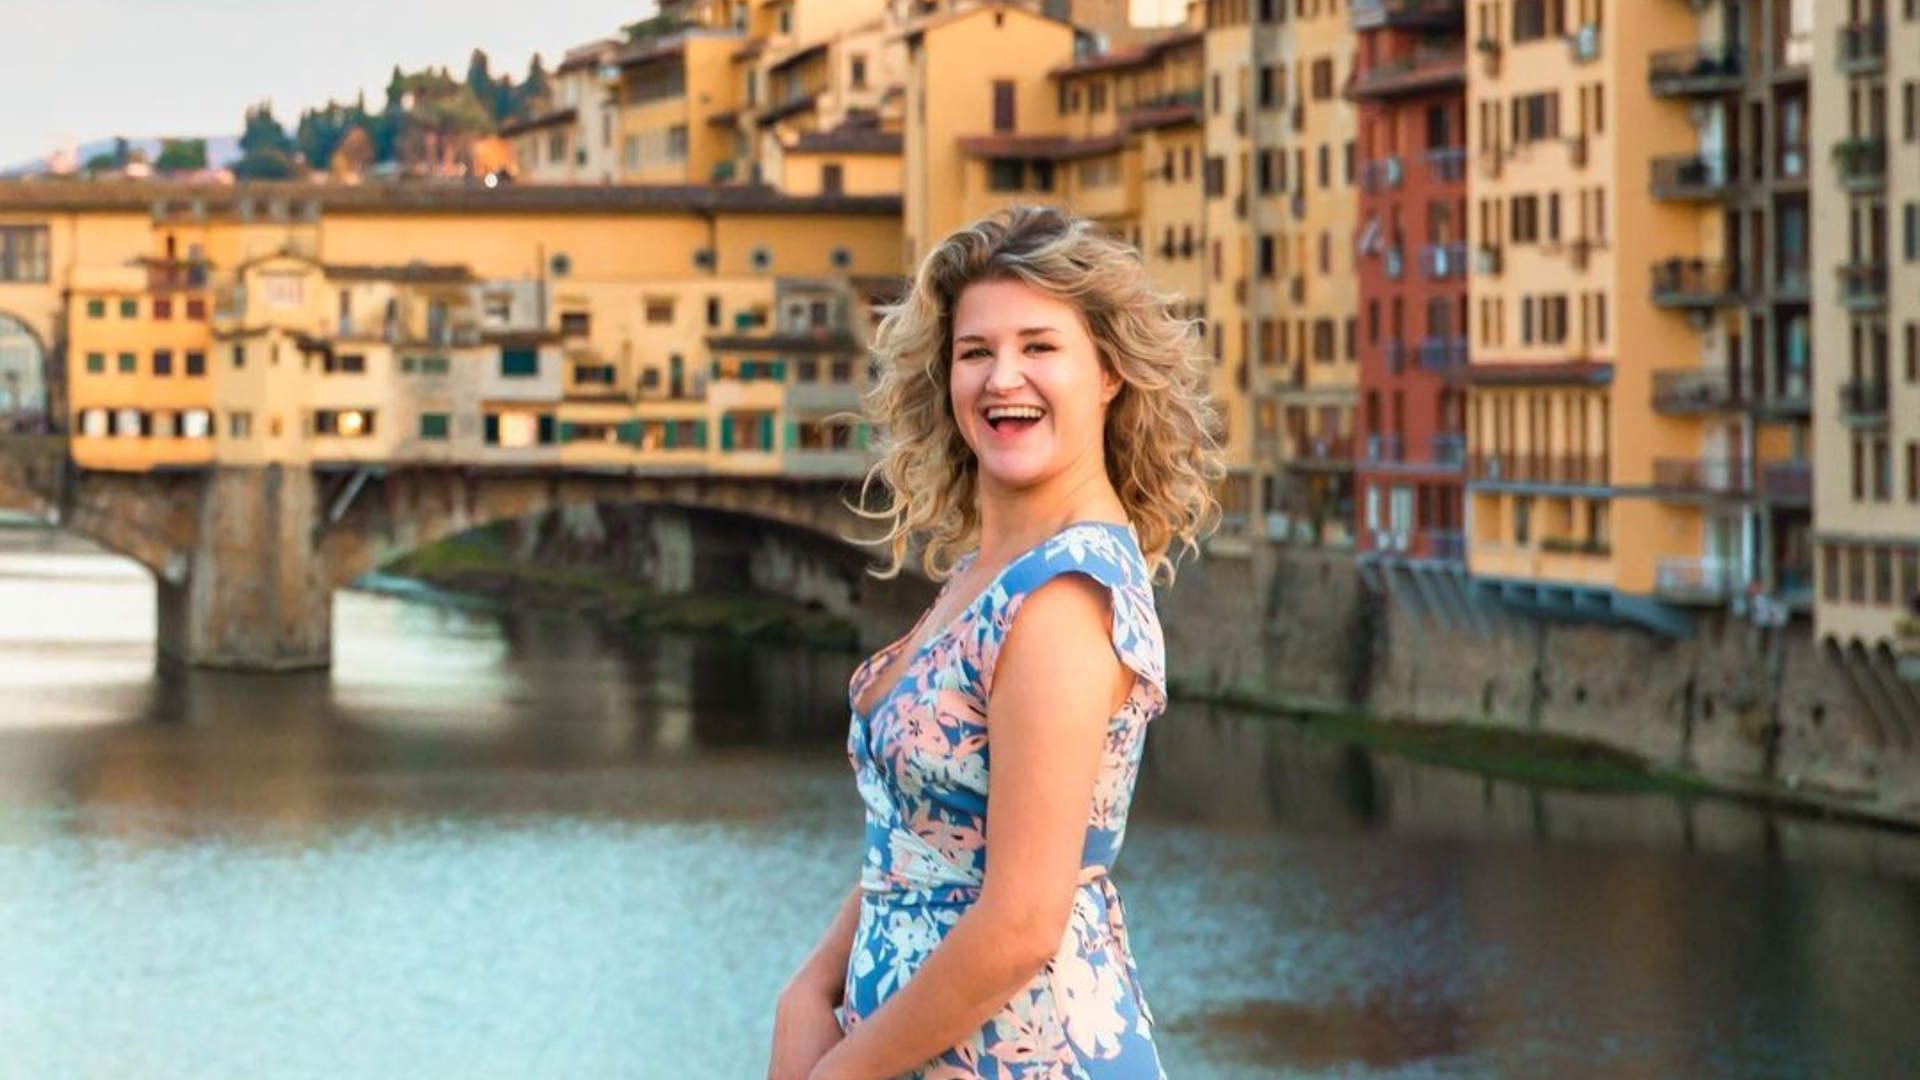 Ismerd meg a táncos történetét, aki nyakába vette Olaszországot és véletlenül rátalált a szerelem!